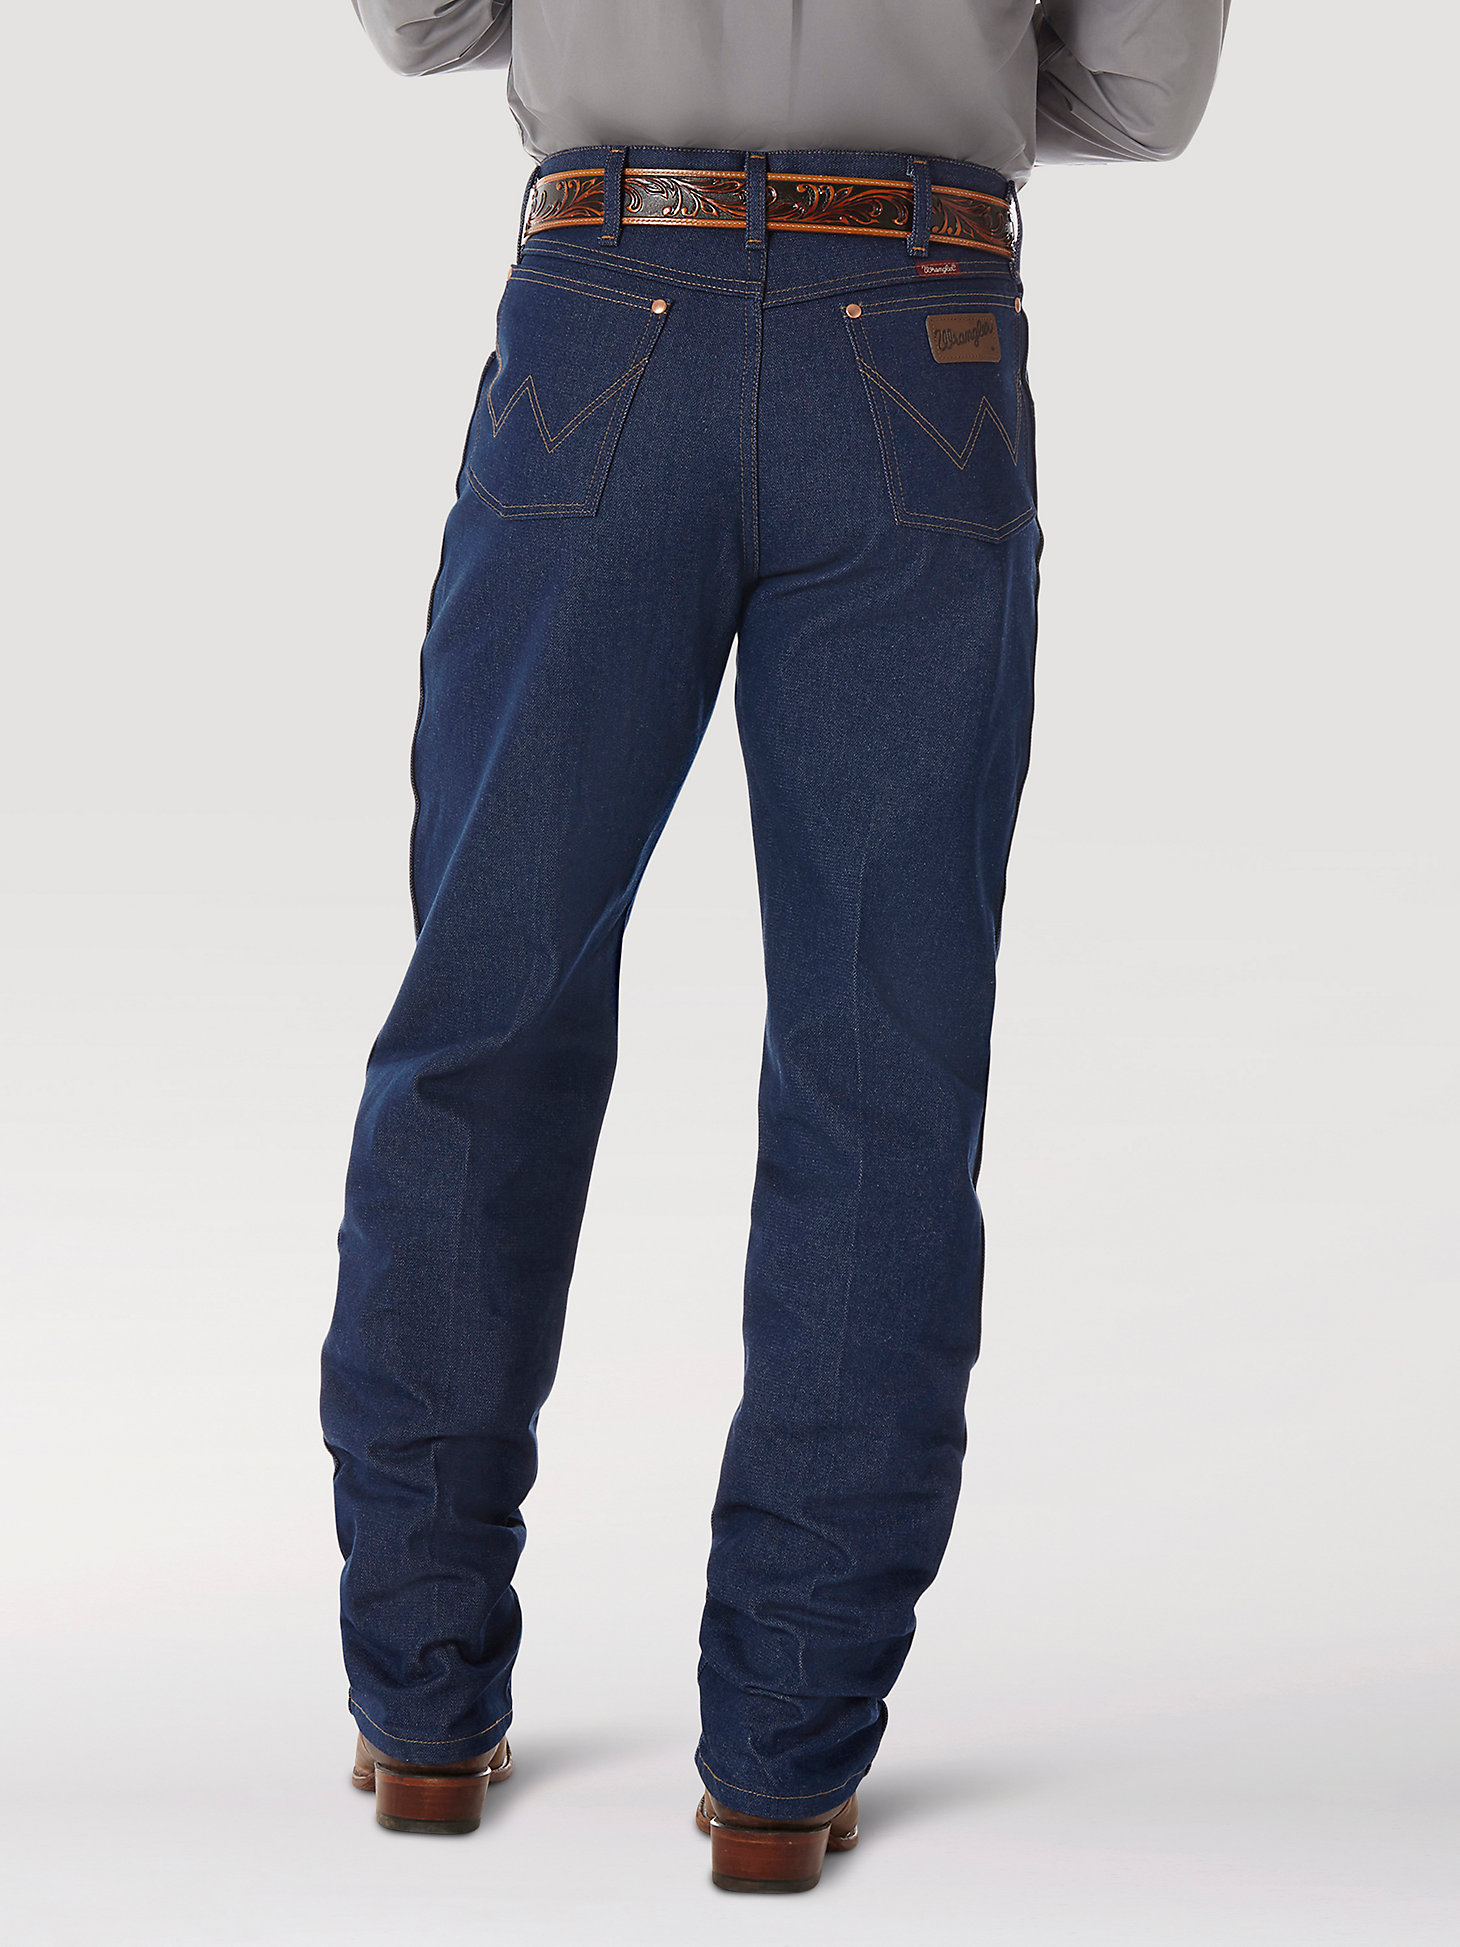 Rigid Wrangler® Cowboy Cut® Relaxed Fit Jean in Rigid Indigo alternative view 2